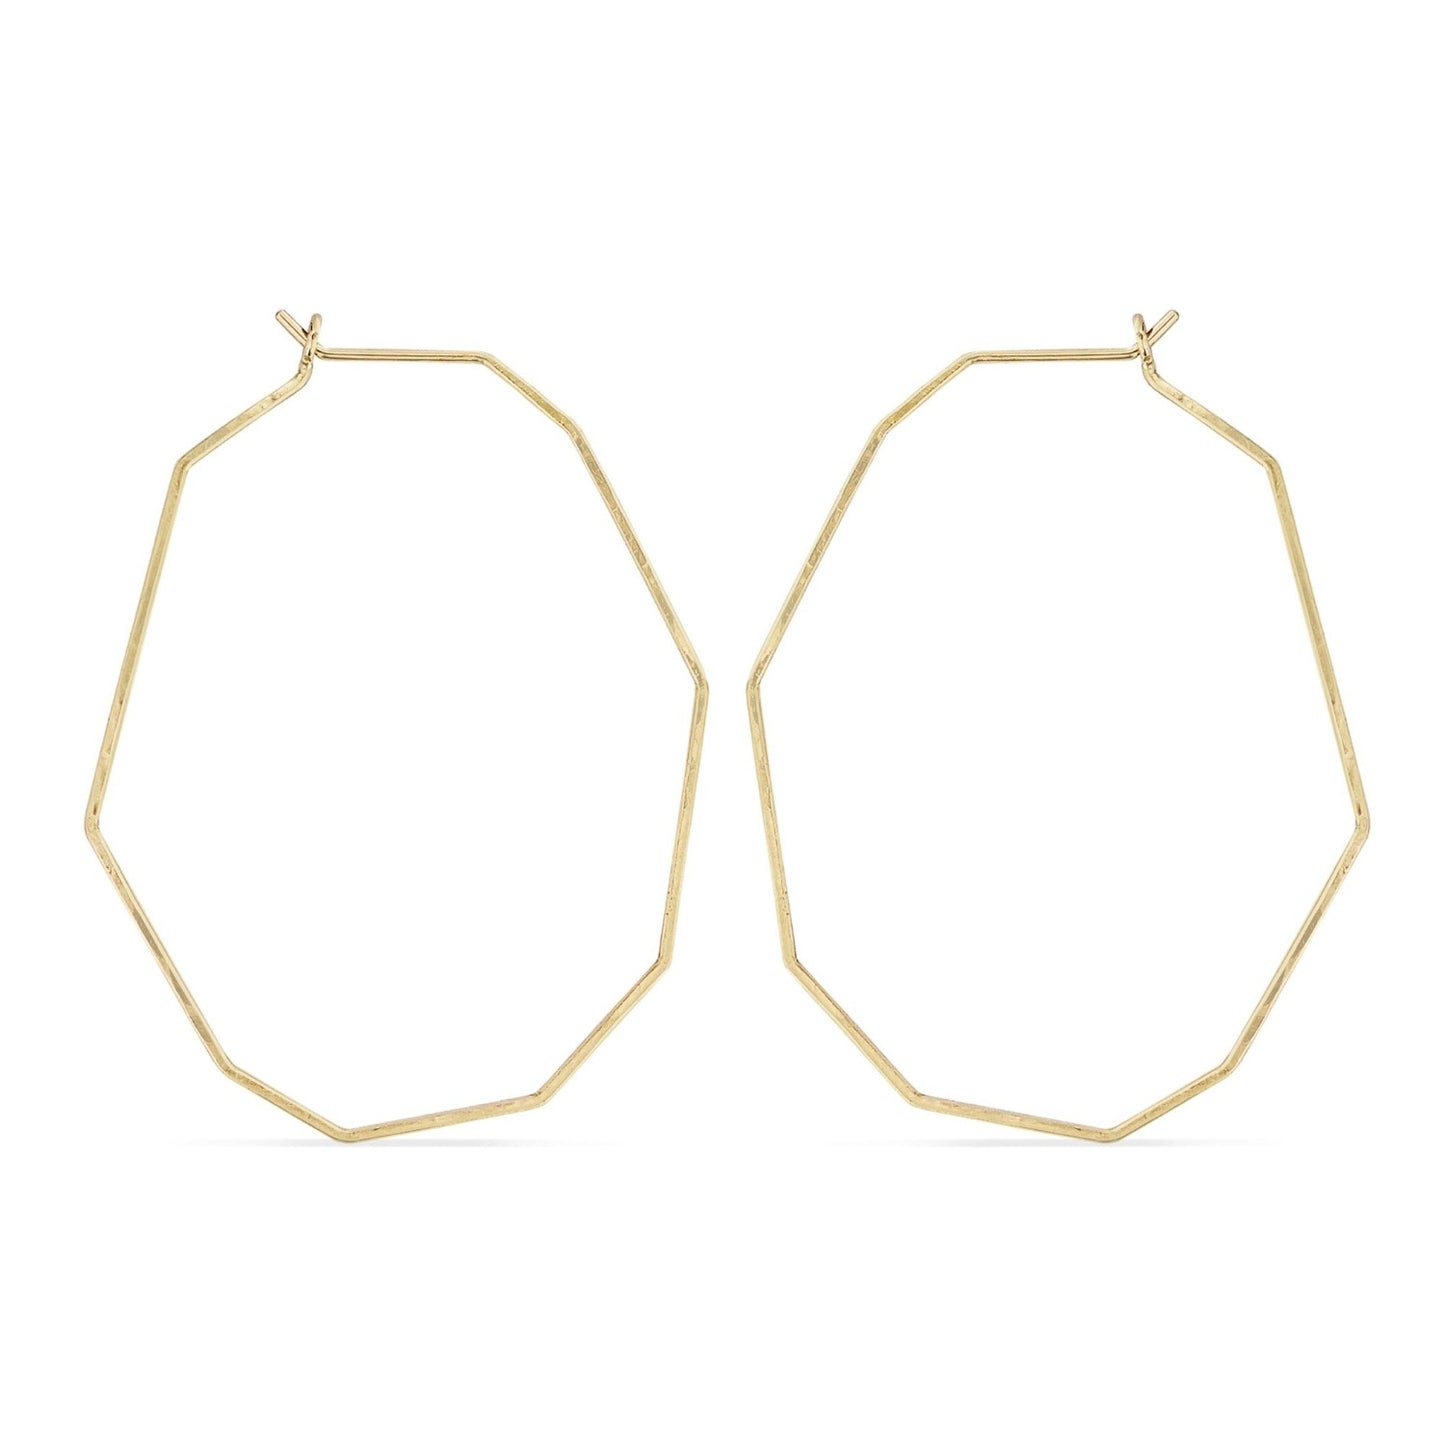 Geometric gold delicate wire hoop earrings